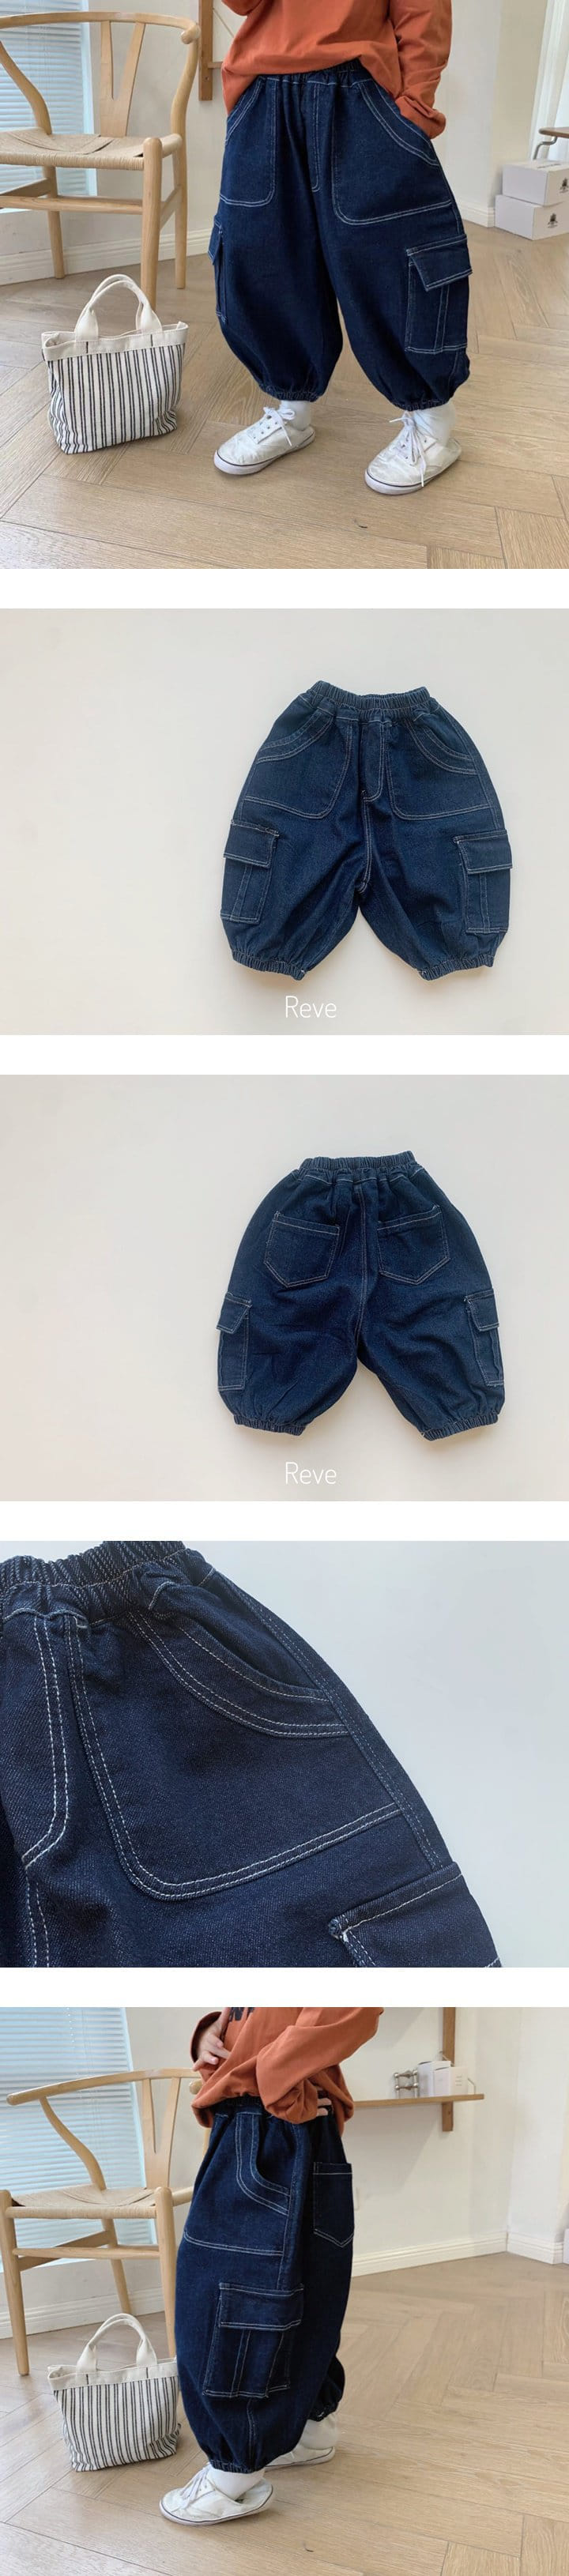 Reve Kid - Korean Children Fashion - #childofig - Stitch Pocket Jeans